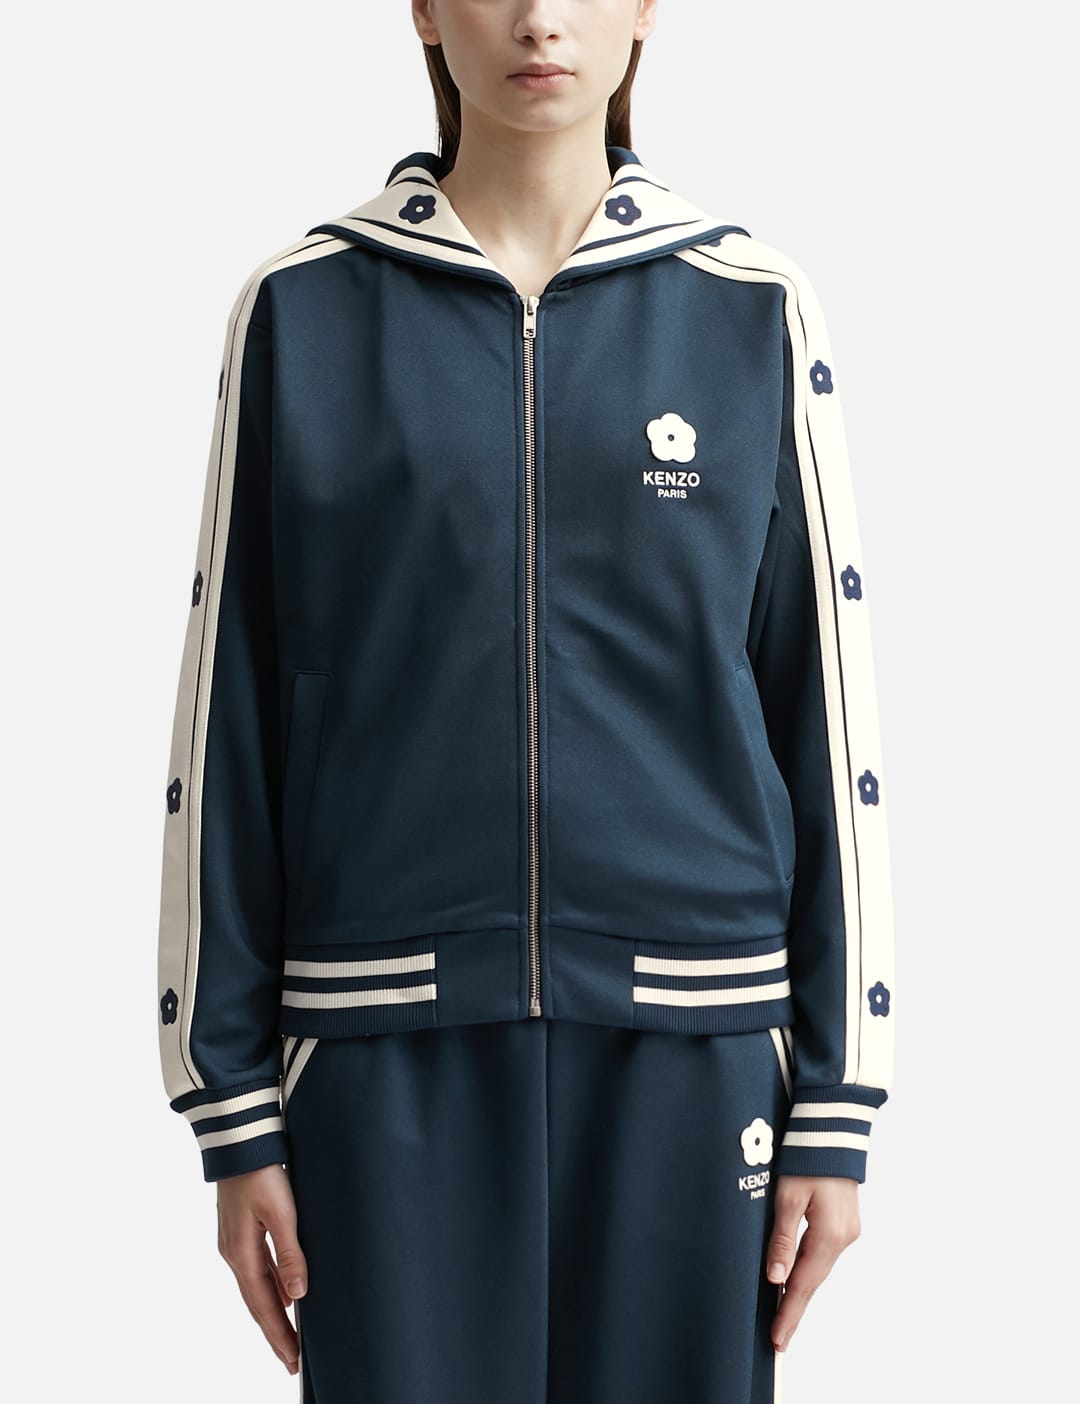 KENZO EElephant Sailor Sweatshirt With Zip